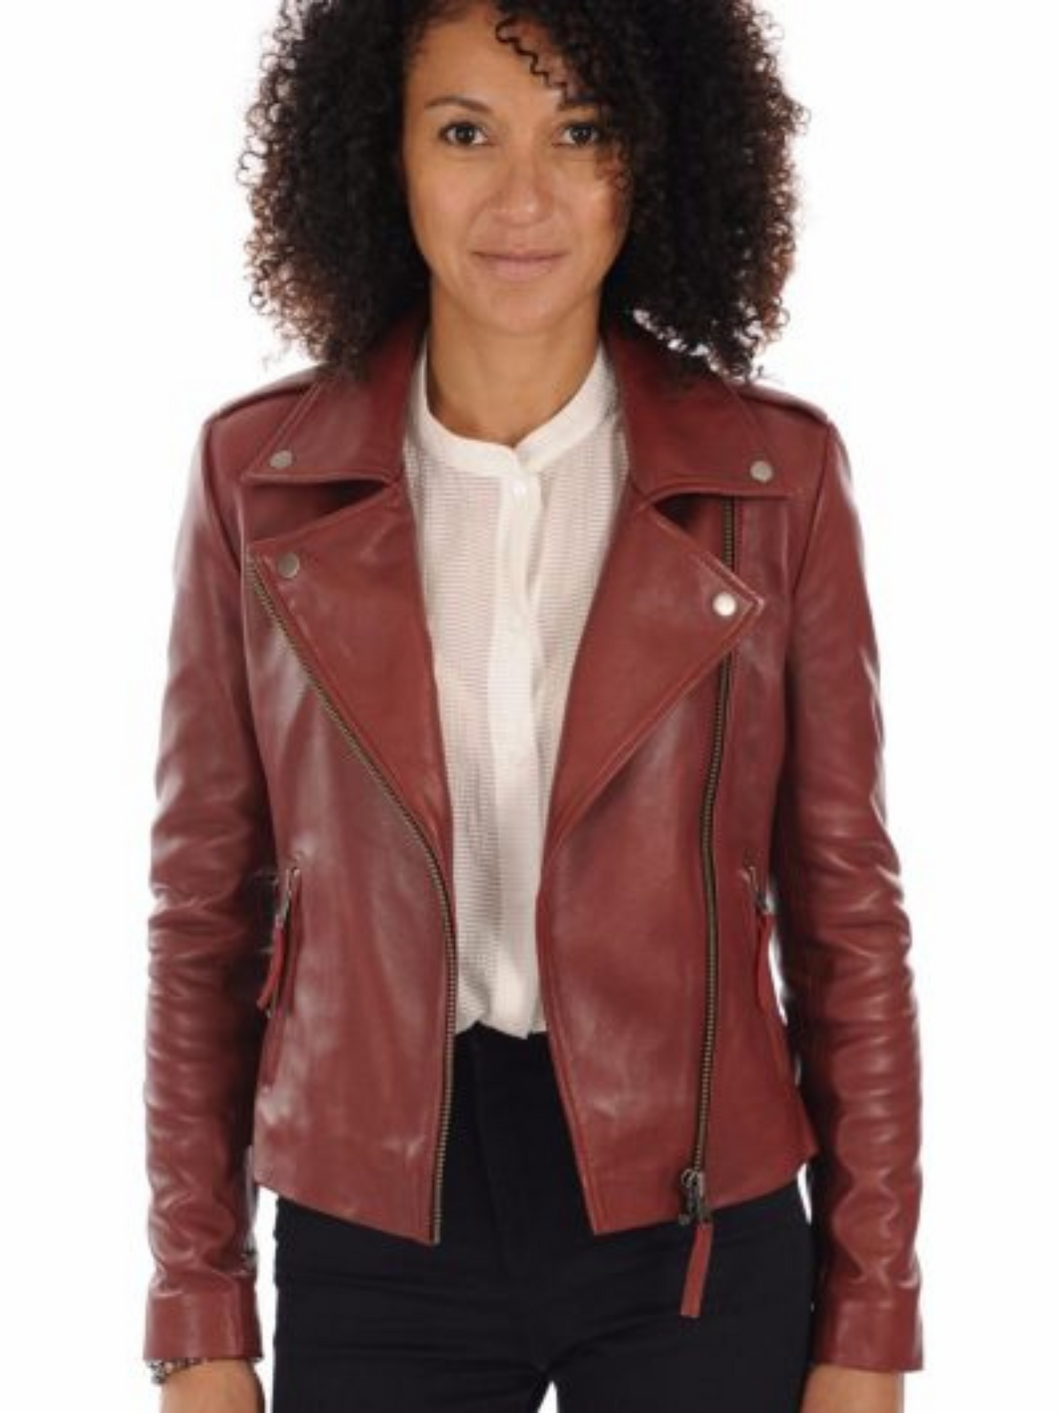 Women’s Asymmetrical Red Biker Leather Jacket